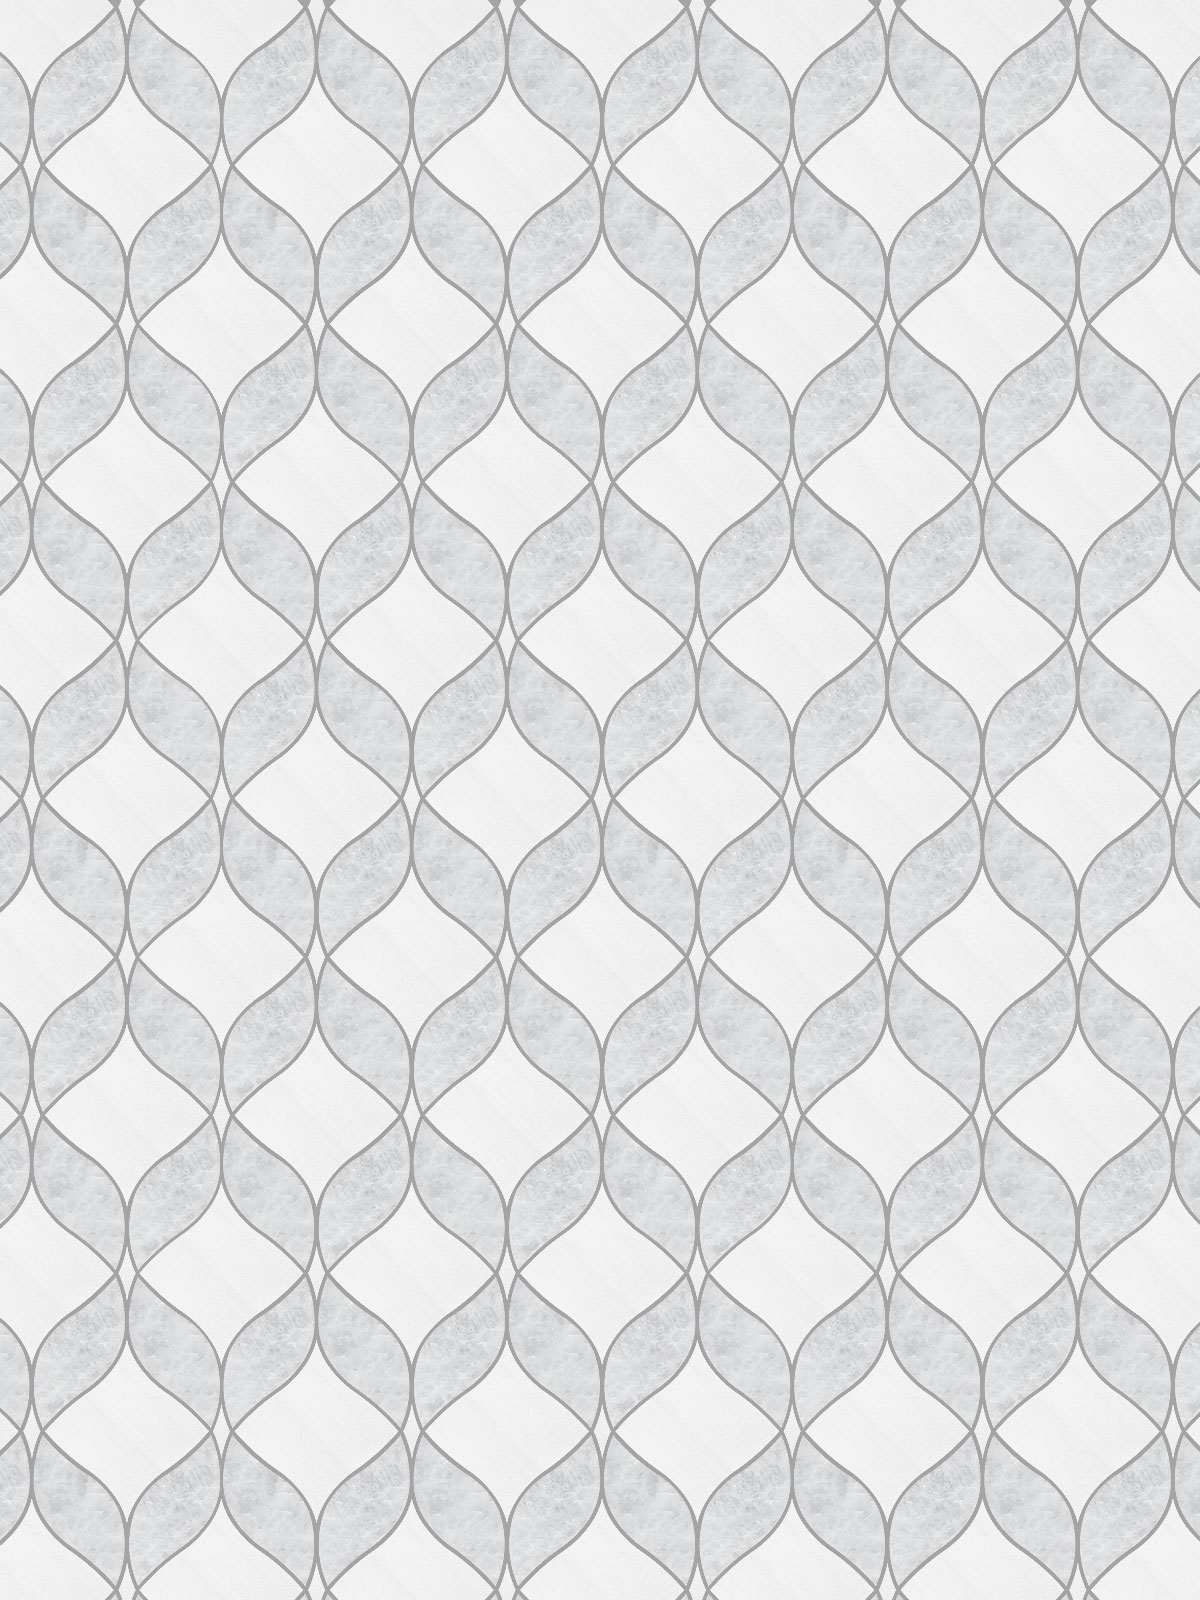 White Gray Waterjet Mosaic Kitchen Backsplash Tile BA6317 8